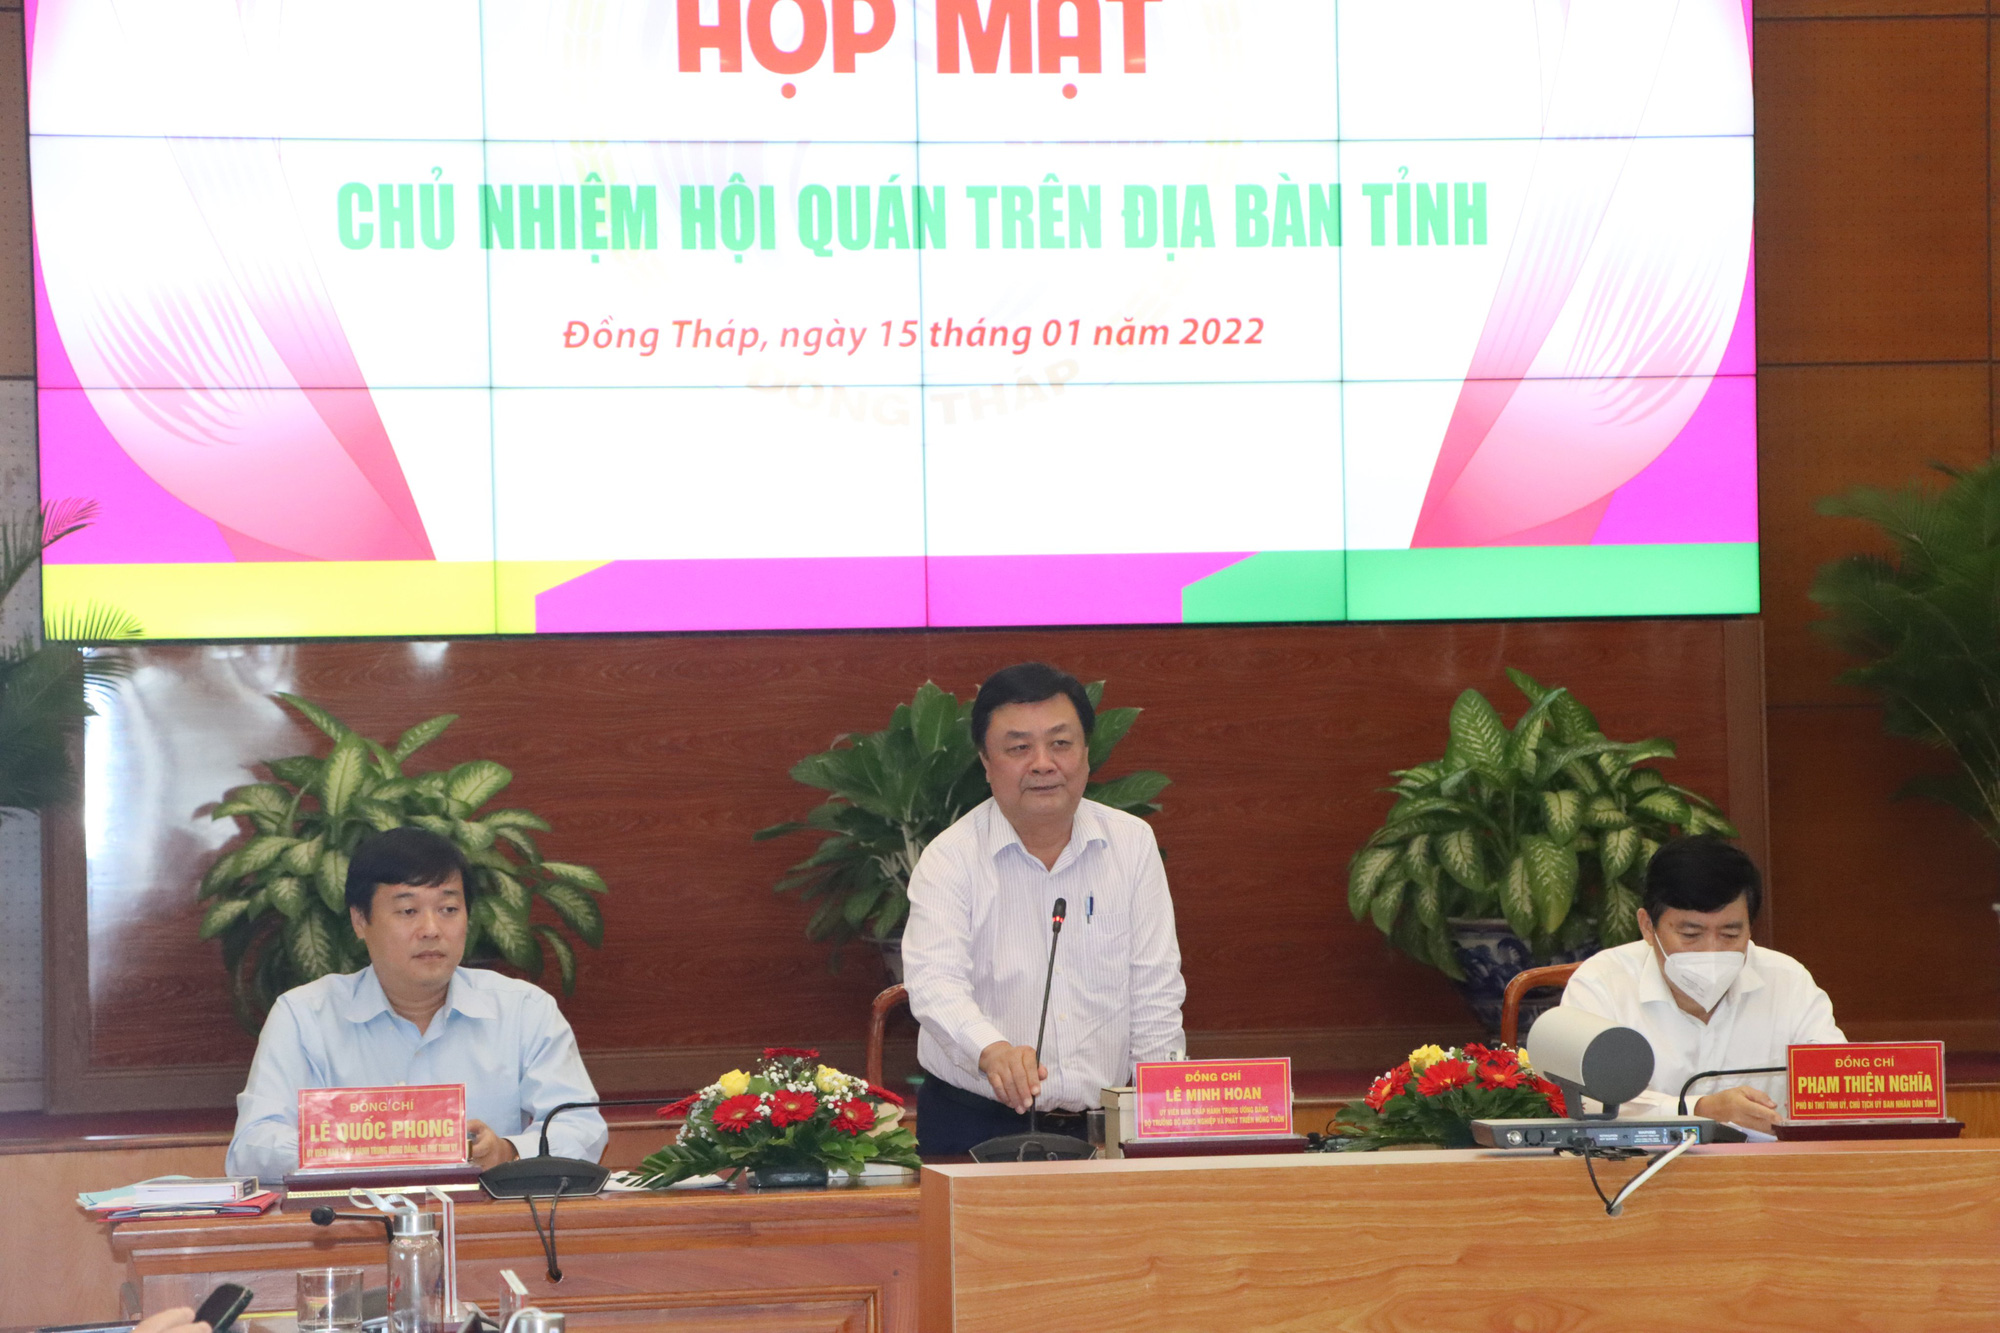 Chủ tịch nước khảo sát mô hình kinh tế hợp tác hợp tác xã ở Đồng Tháp   Chính trị  Vietnam VietnamPlus